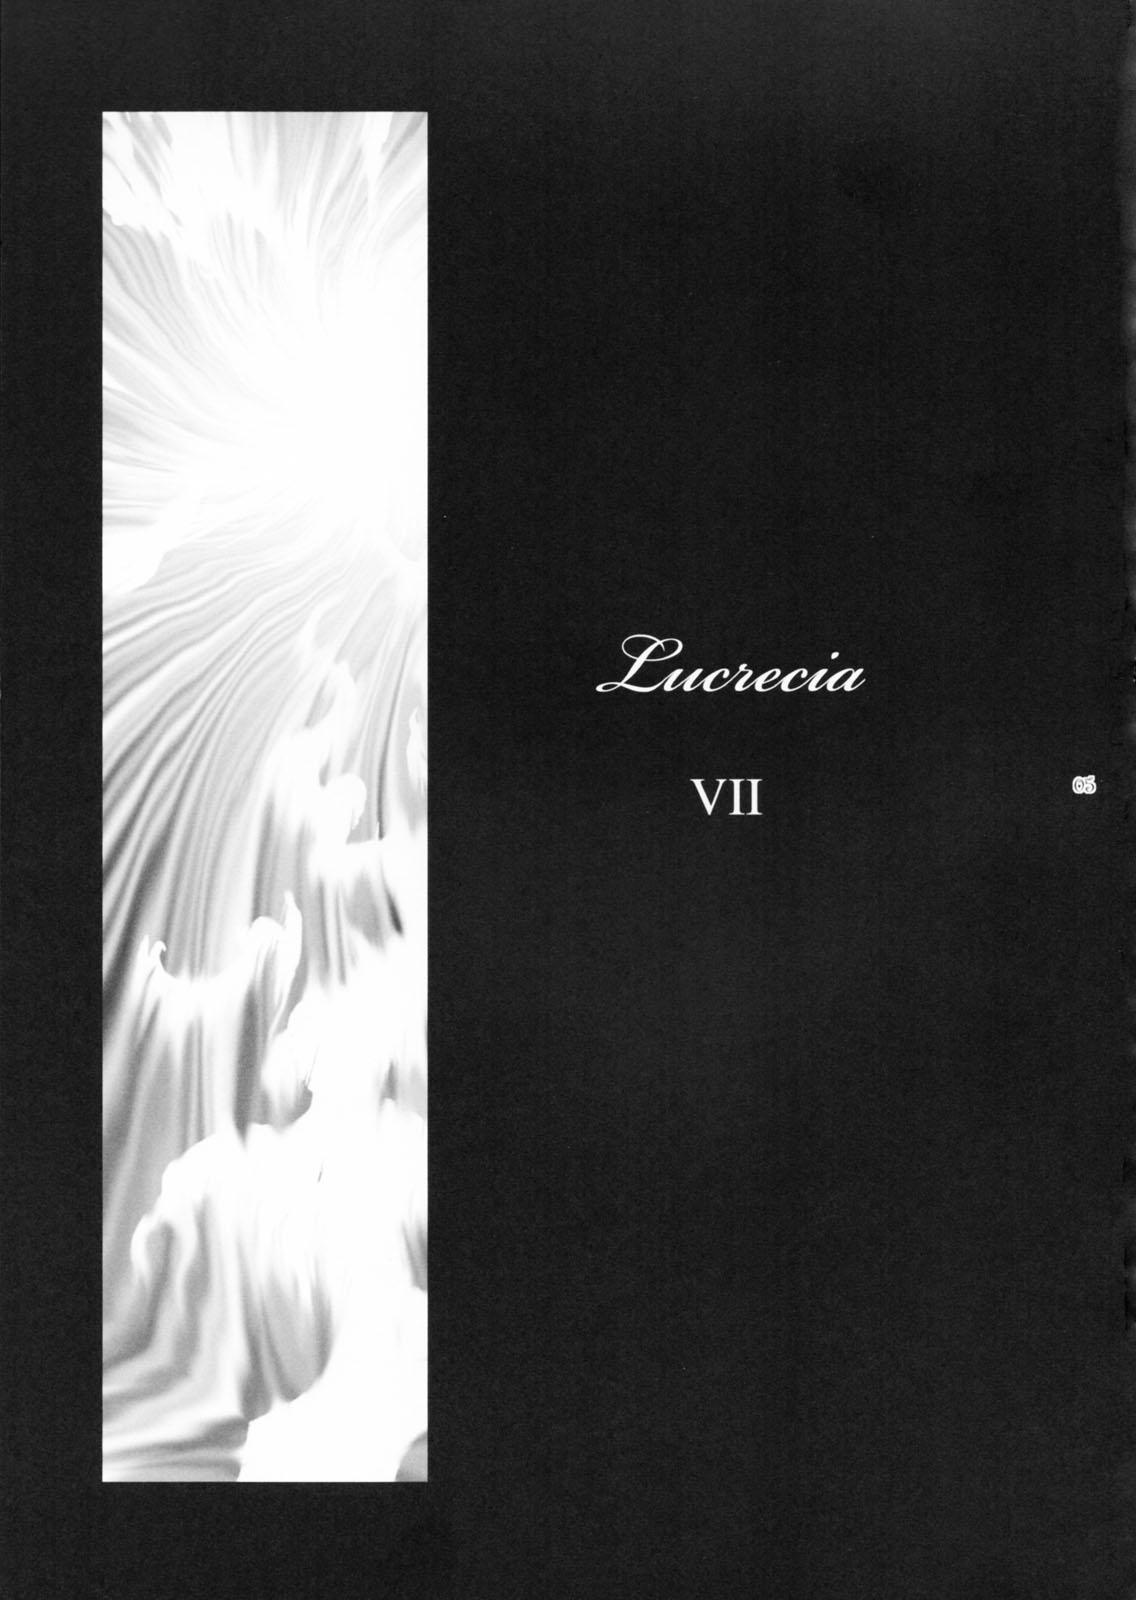 Lucrecia VII 3